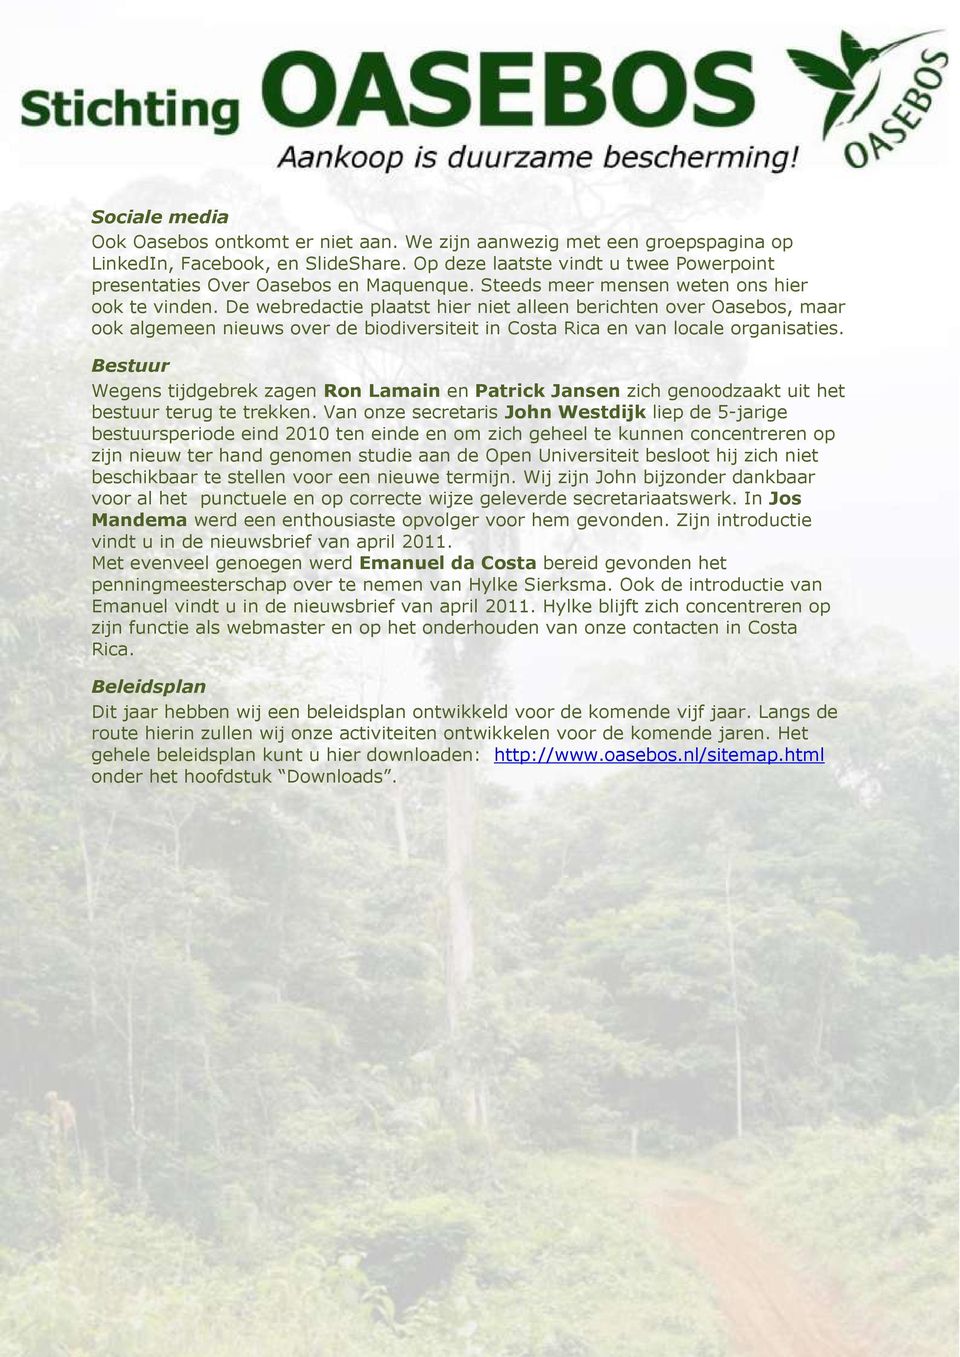 De webredactie plaatst hier niet alleen berichten over Oasebos, maar ook algemeen nieuws over de biodiversiteit in Costa Rica en van locale organisaties.